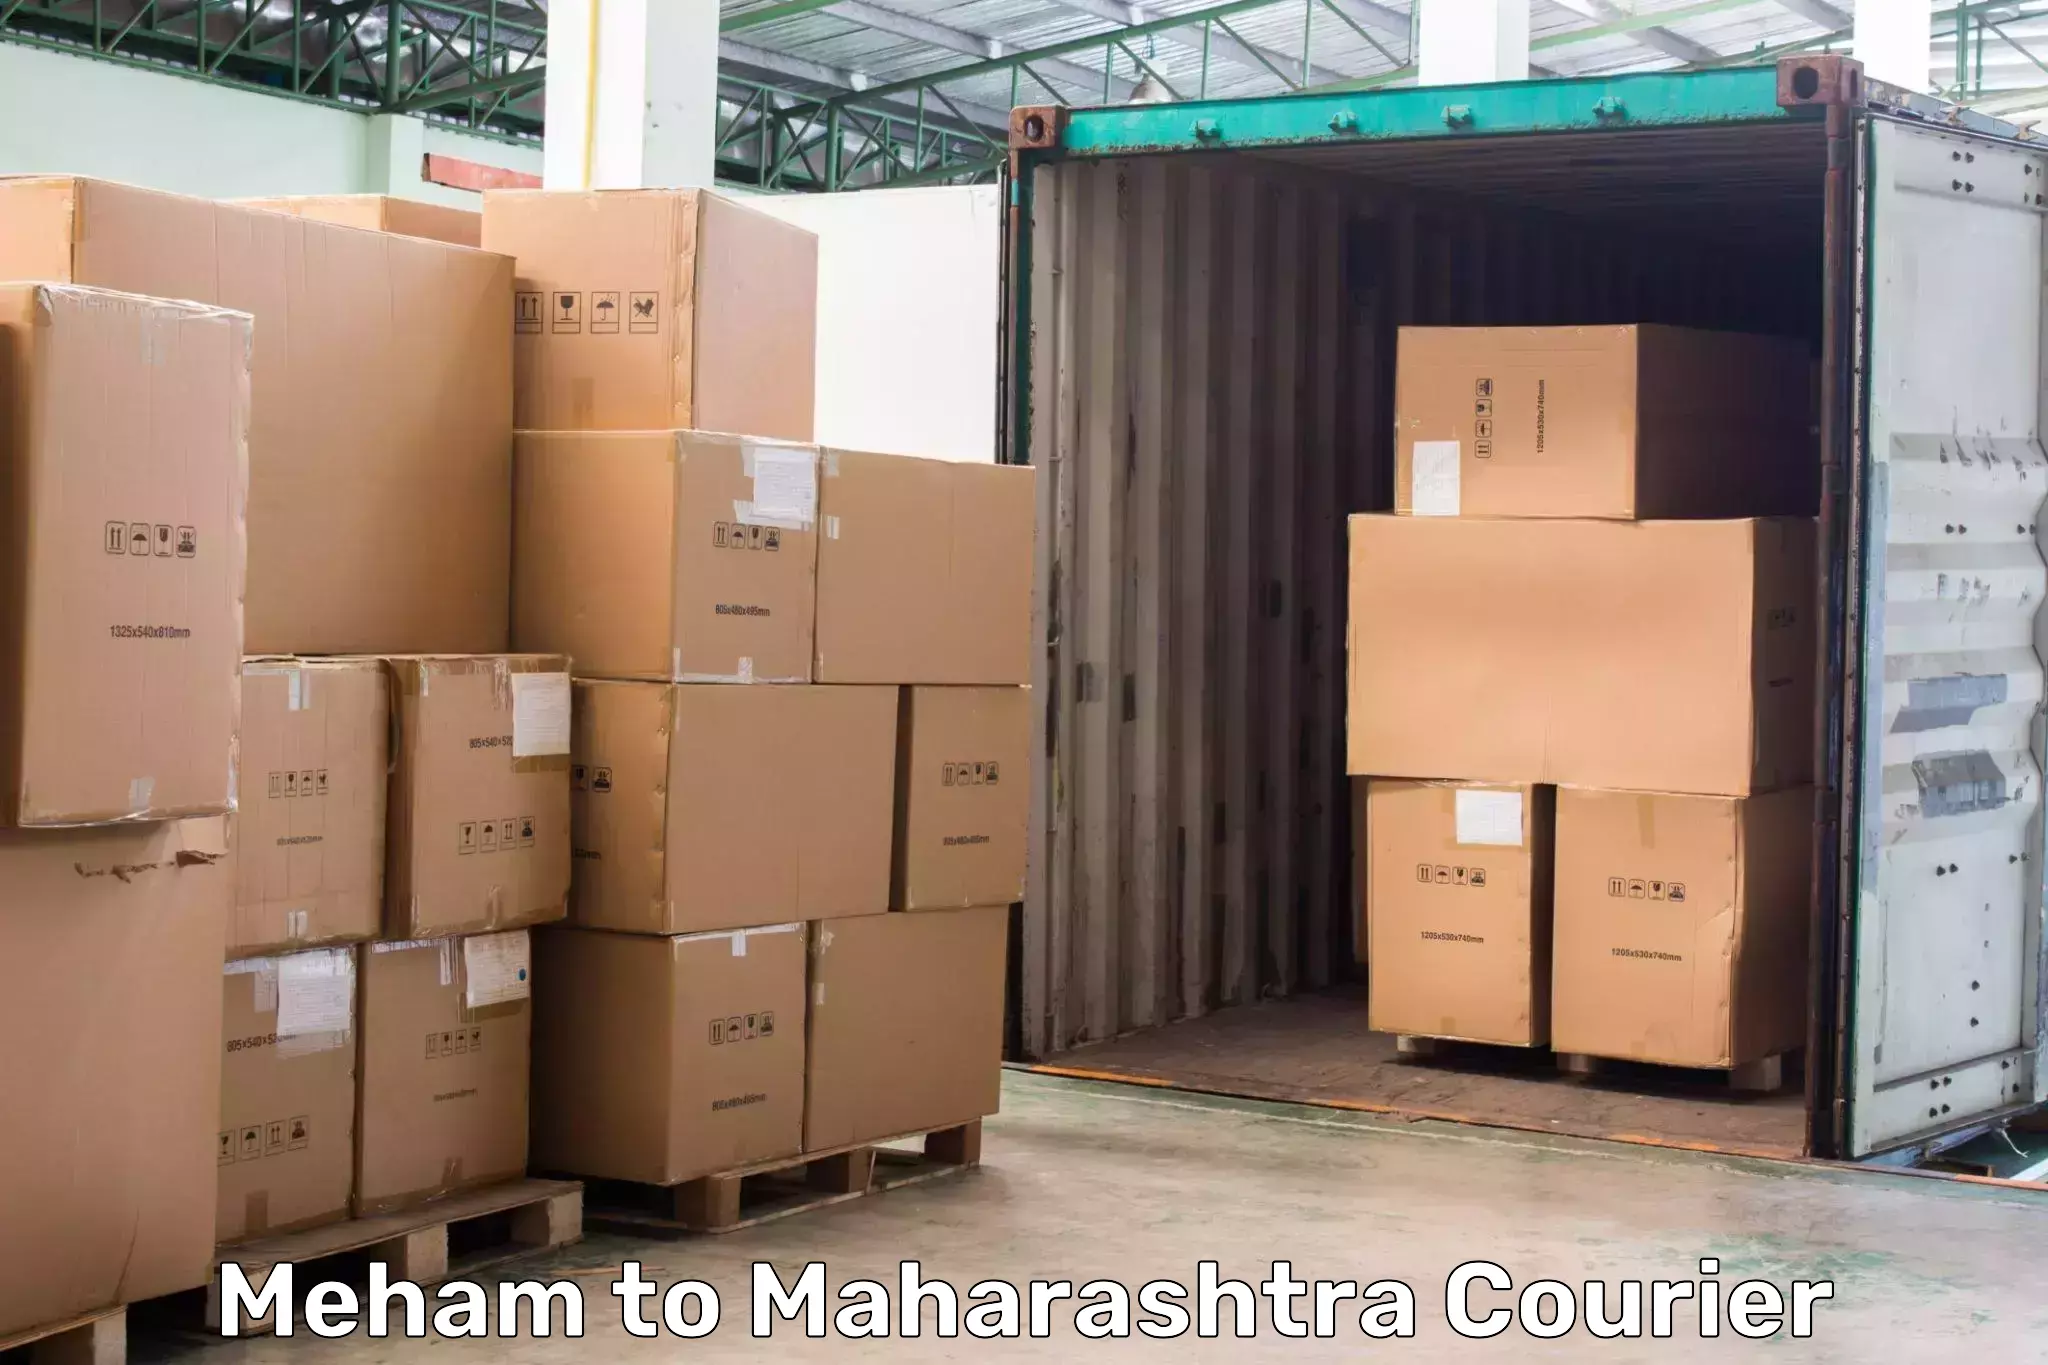 Courier app Meham to Maharashtra